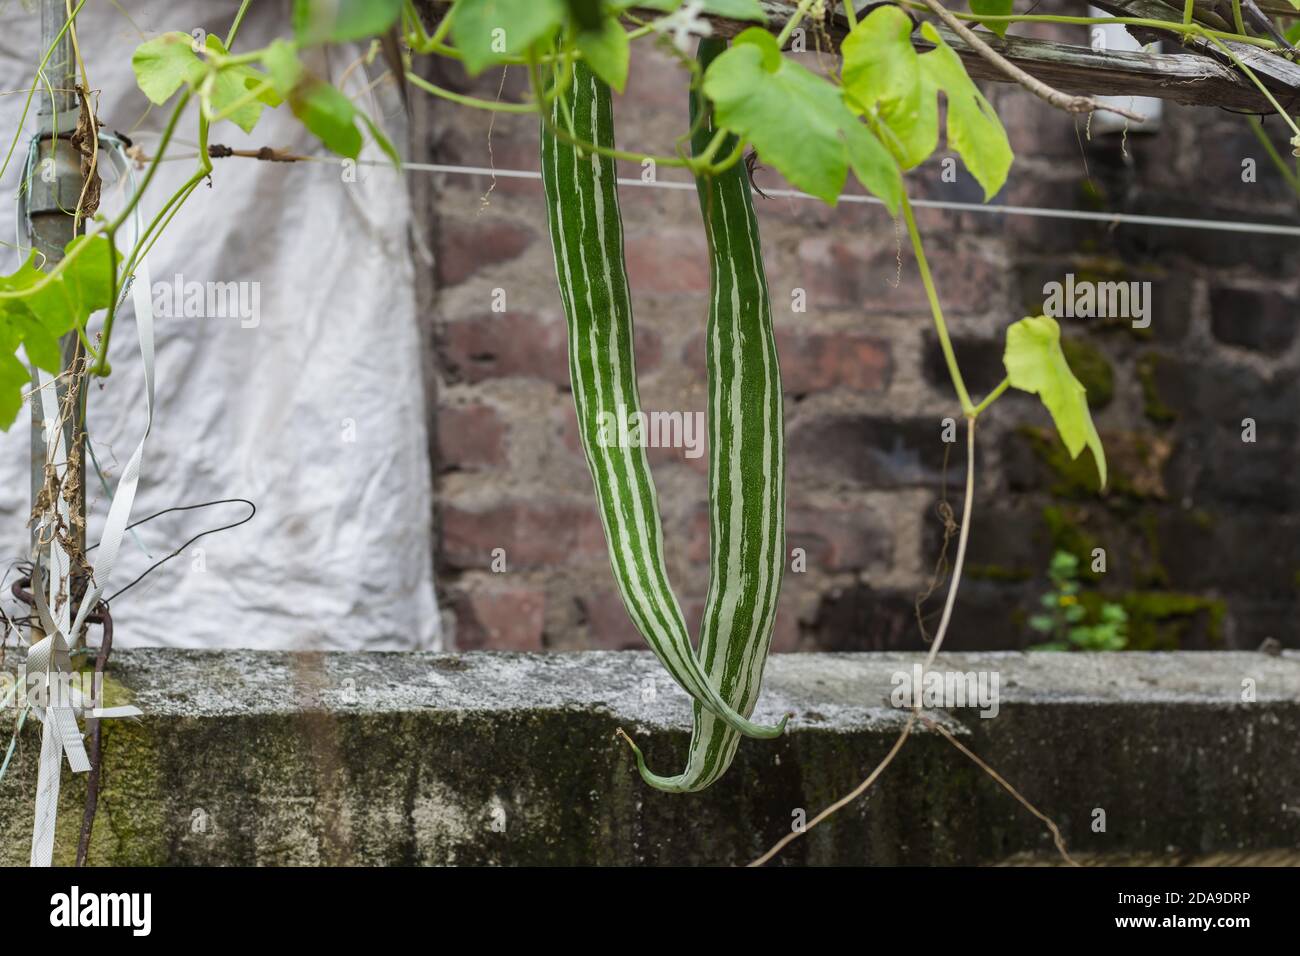 Bio-grüne Schlange Kürbis Gemüse im Hausgarten in indien hängen von Rine.This Gemüse ist weit verbreitet in der asiatischen Küche verwendet. Natürliche im Freien erschossen. Stockfoto